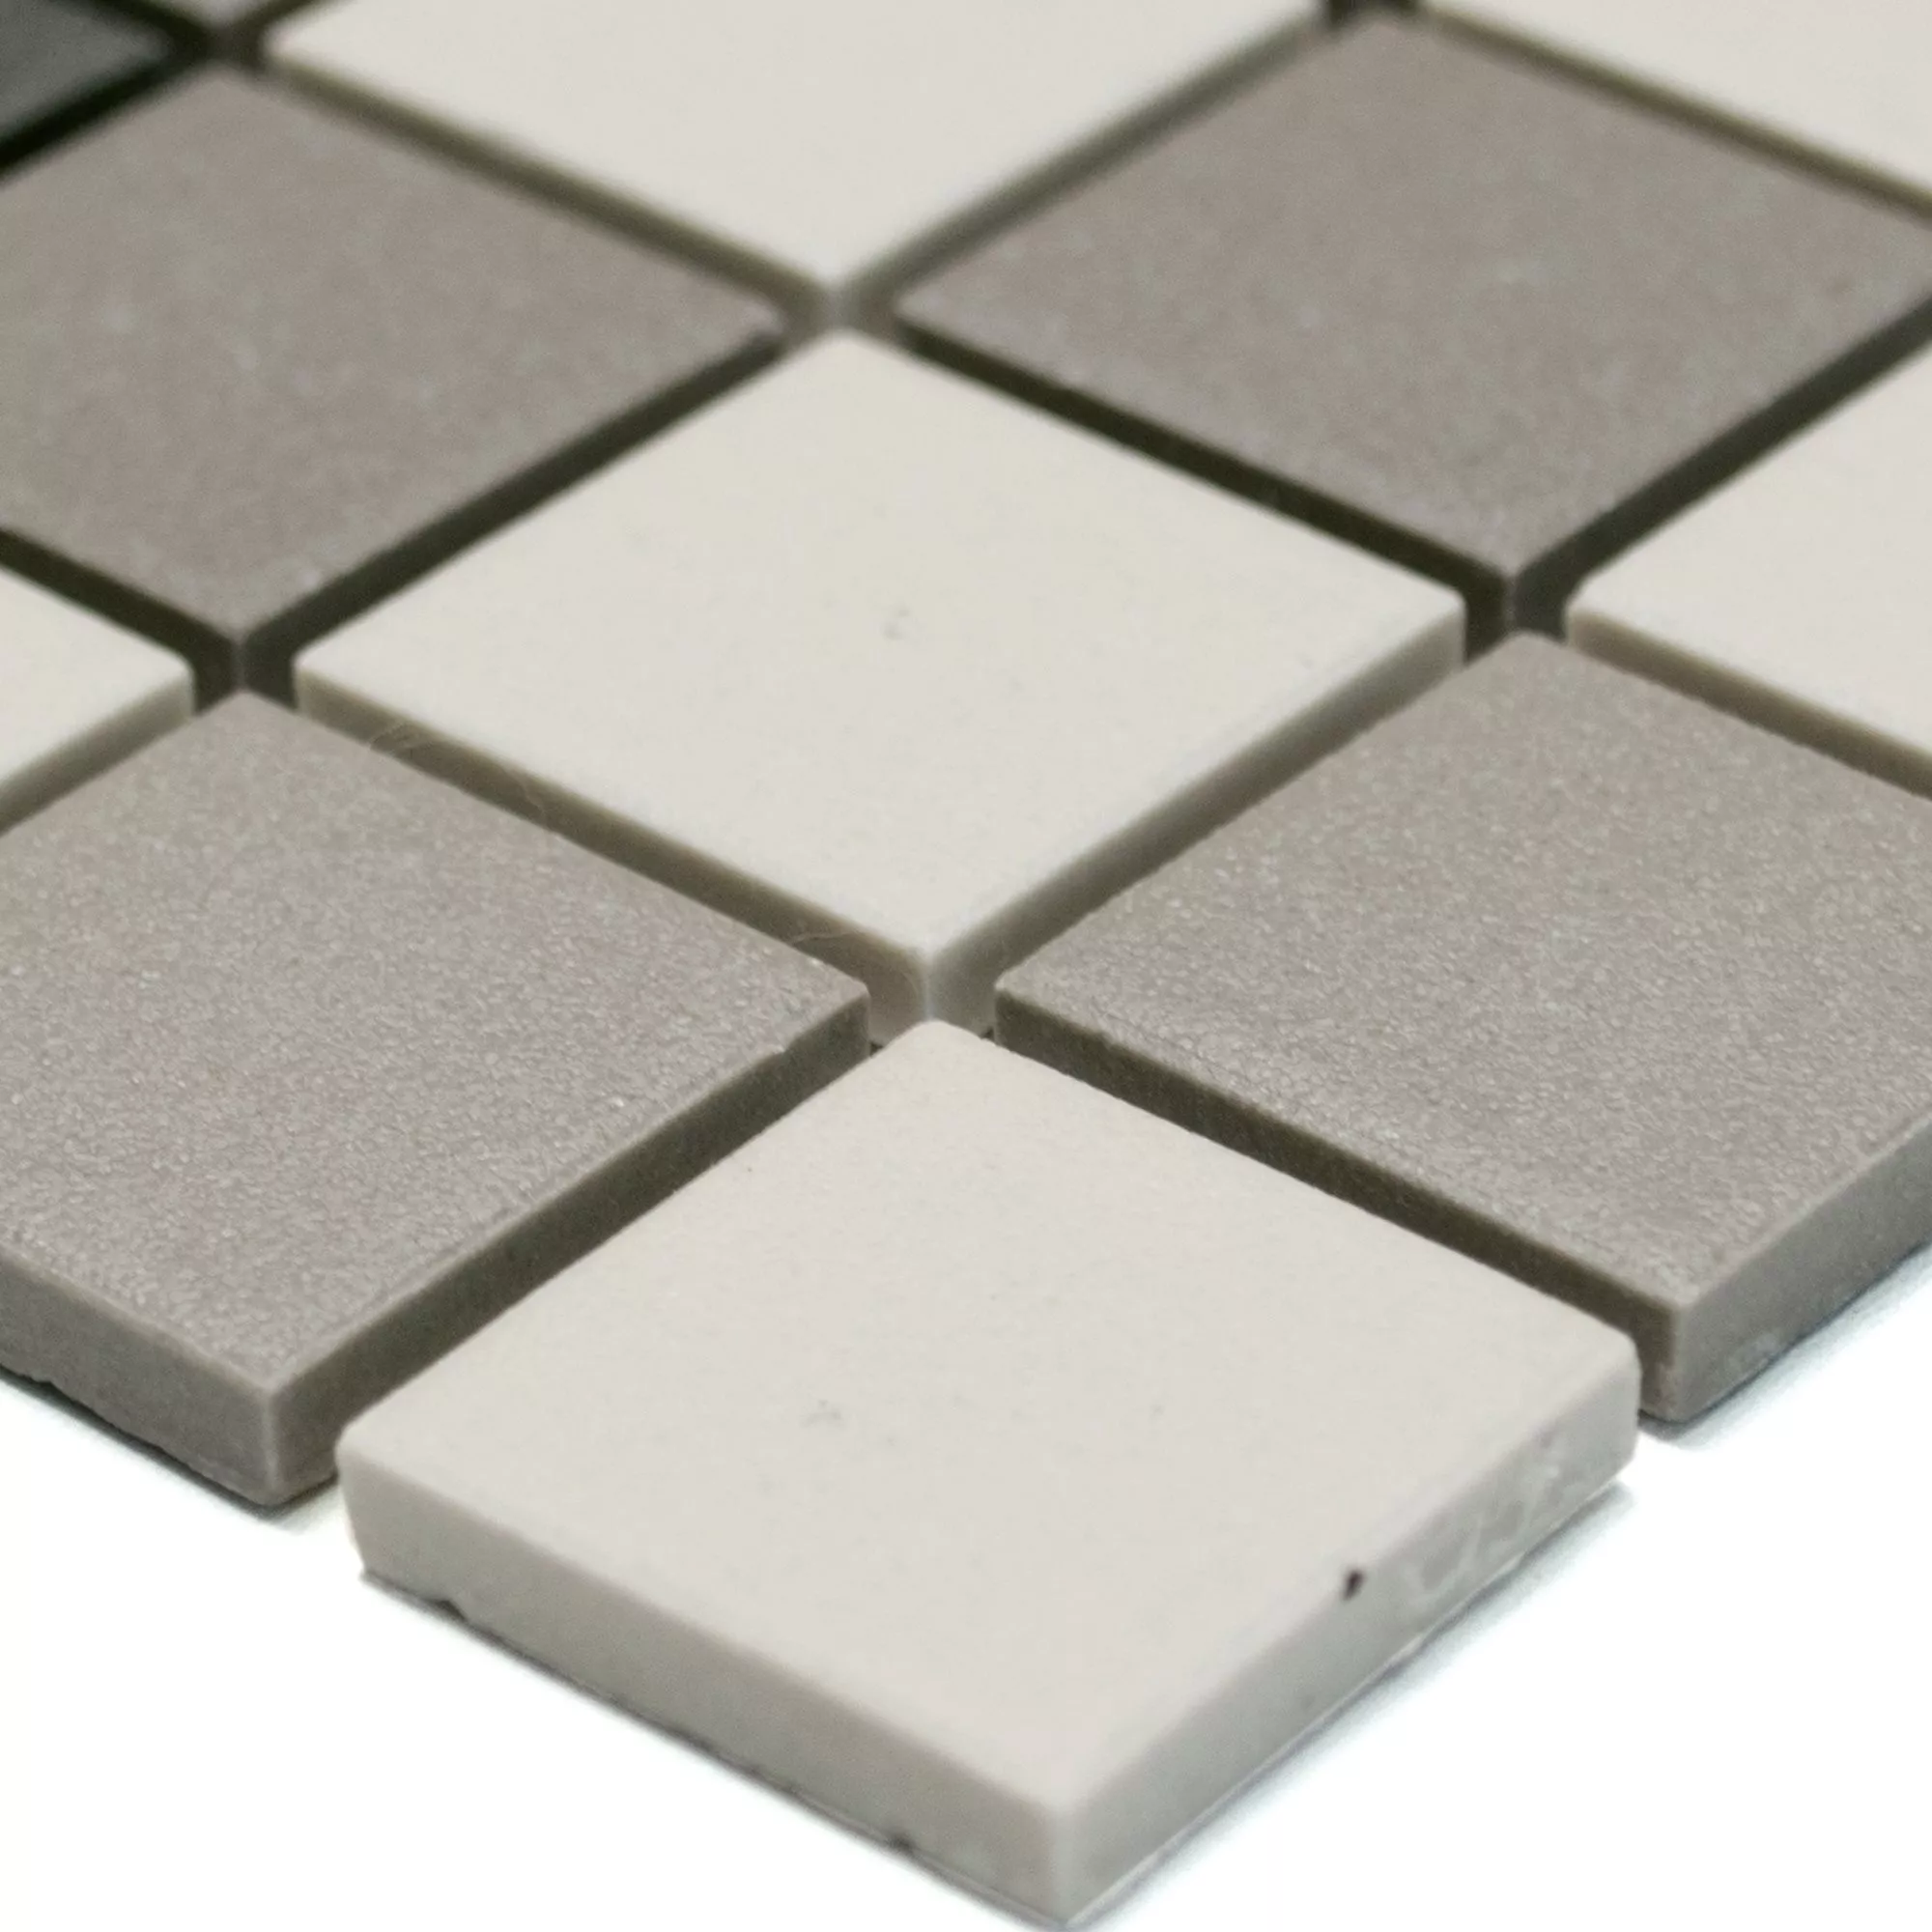 Sample Ceramic Mosaic Miranda Non-Slip Grey Beige Unglazed Q25